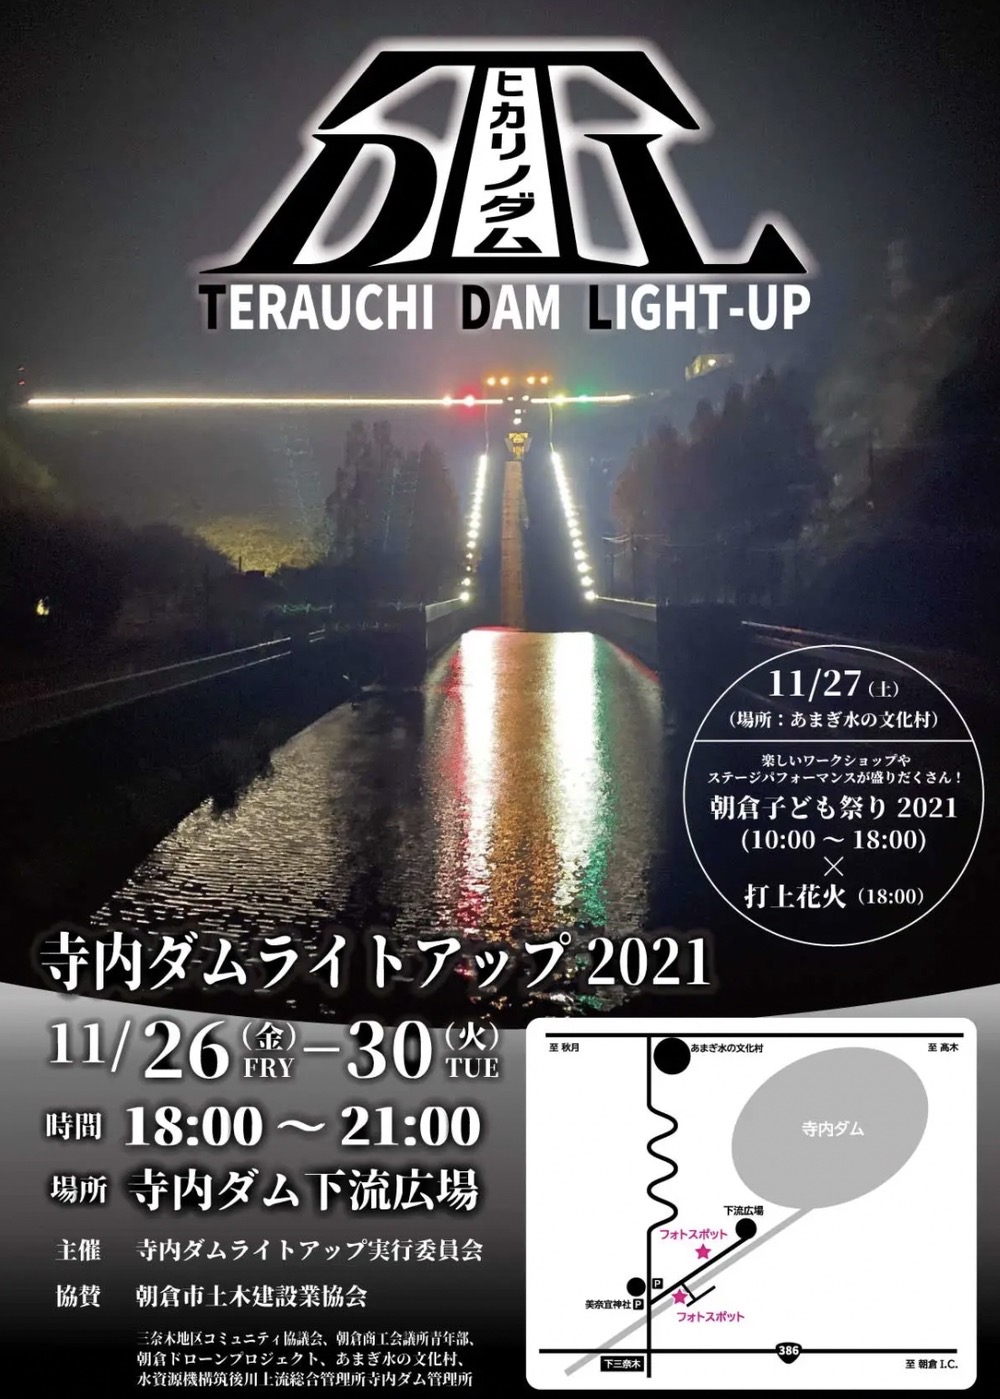 寺内ダムライトアップ2021 希望の光！ダムをライトアップ 11月開催【朝倉市】